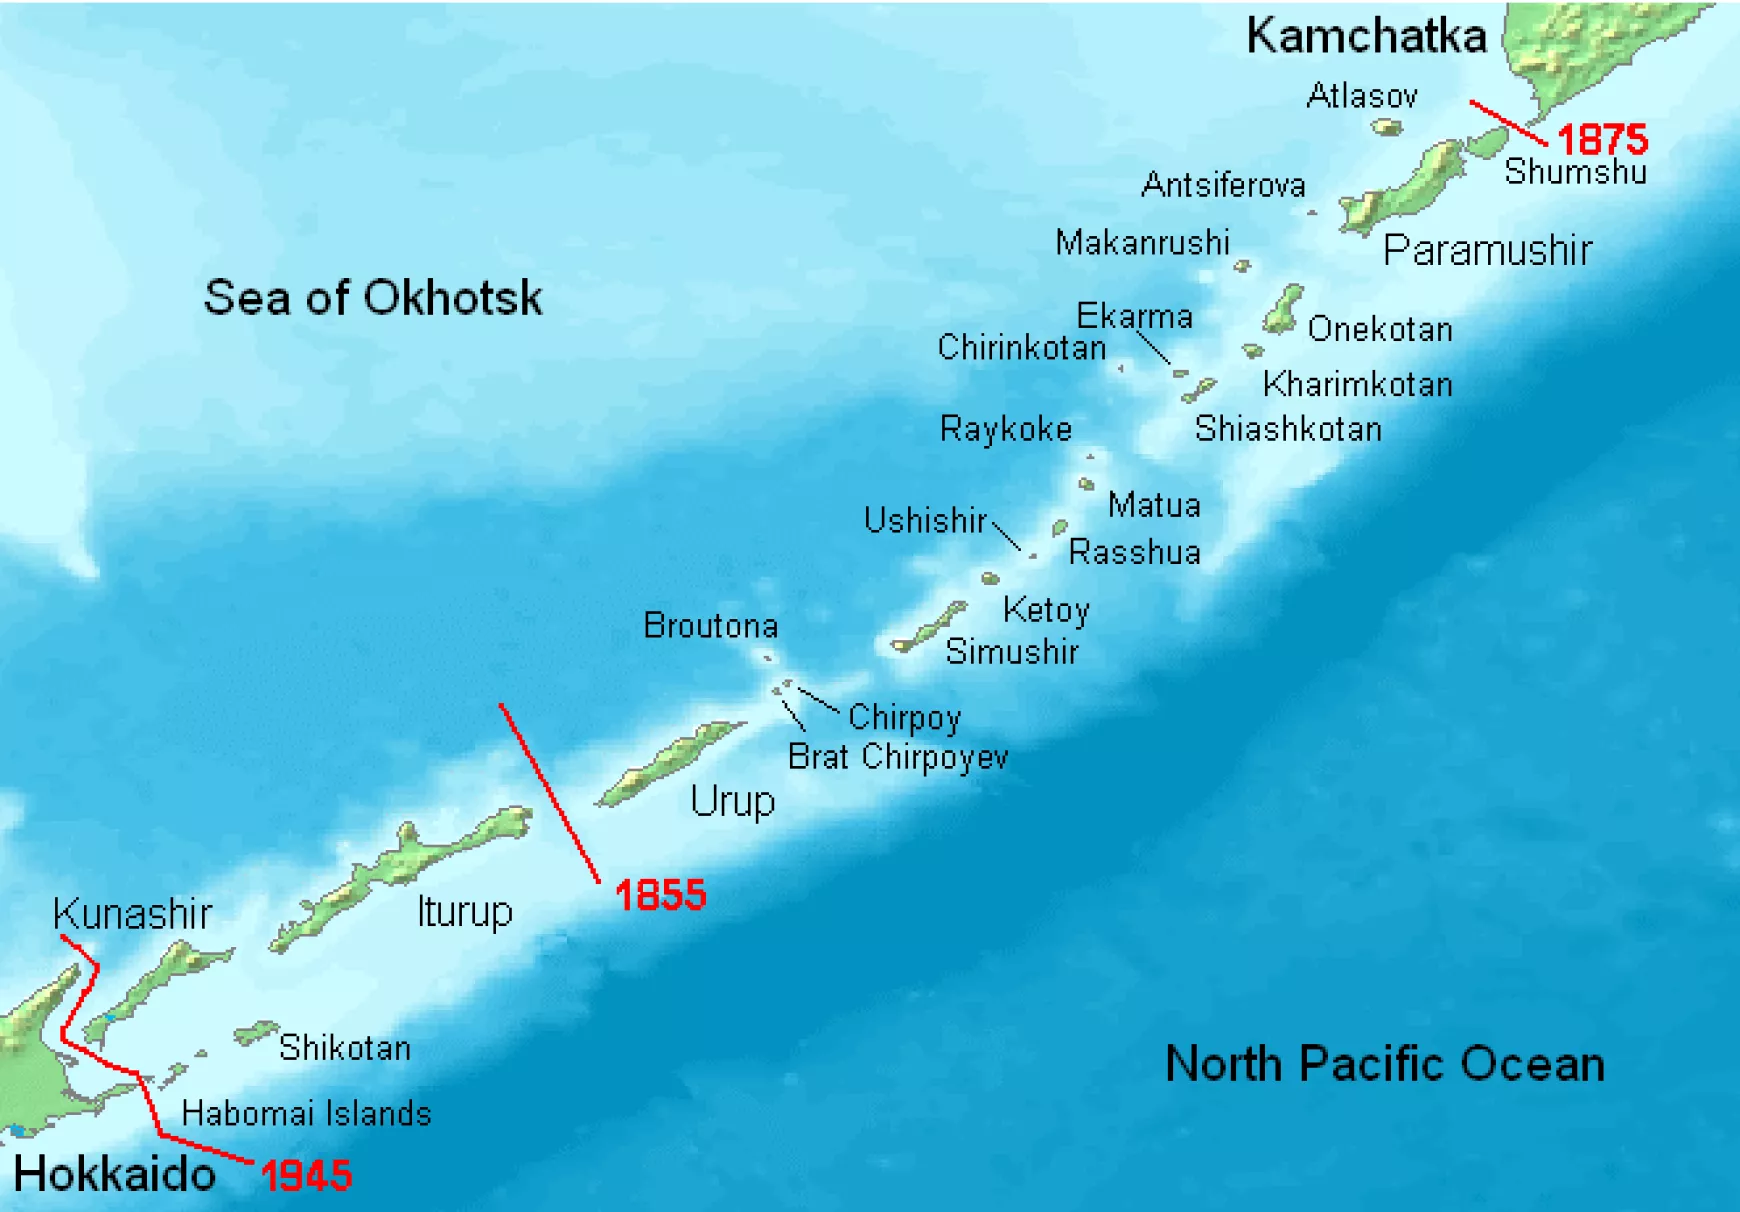 A térképen az 1945 és 1855 között található szigetek hovatartozásáról van szó